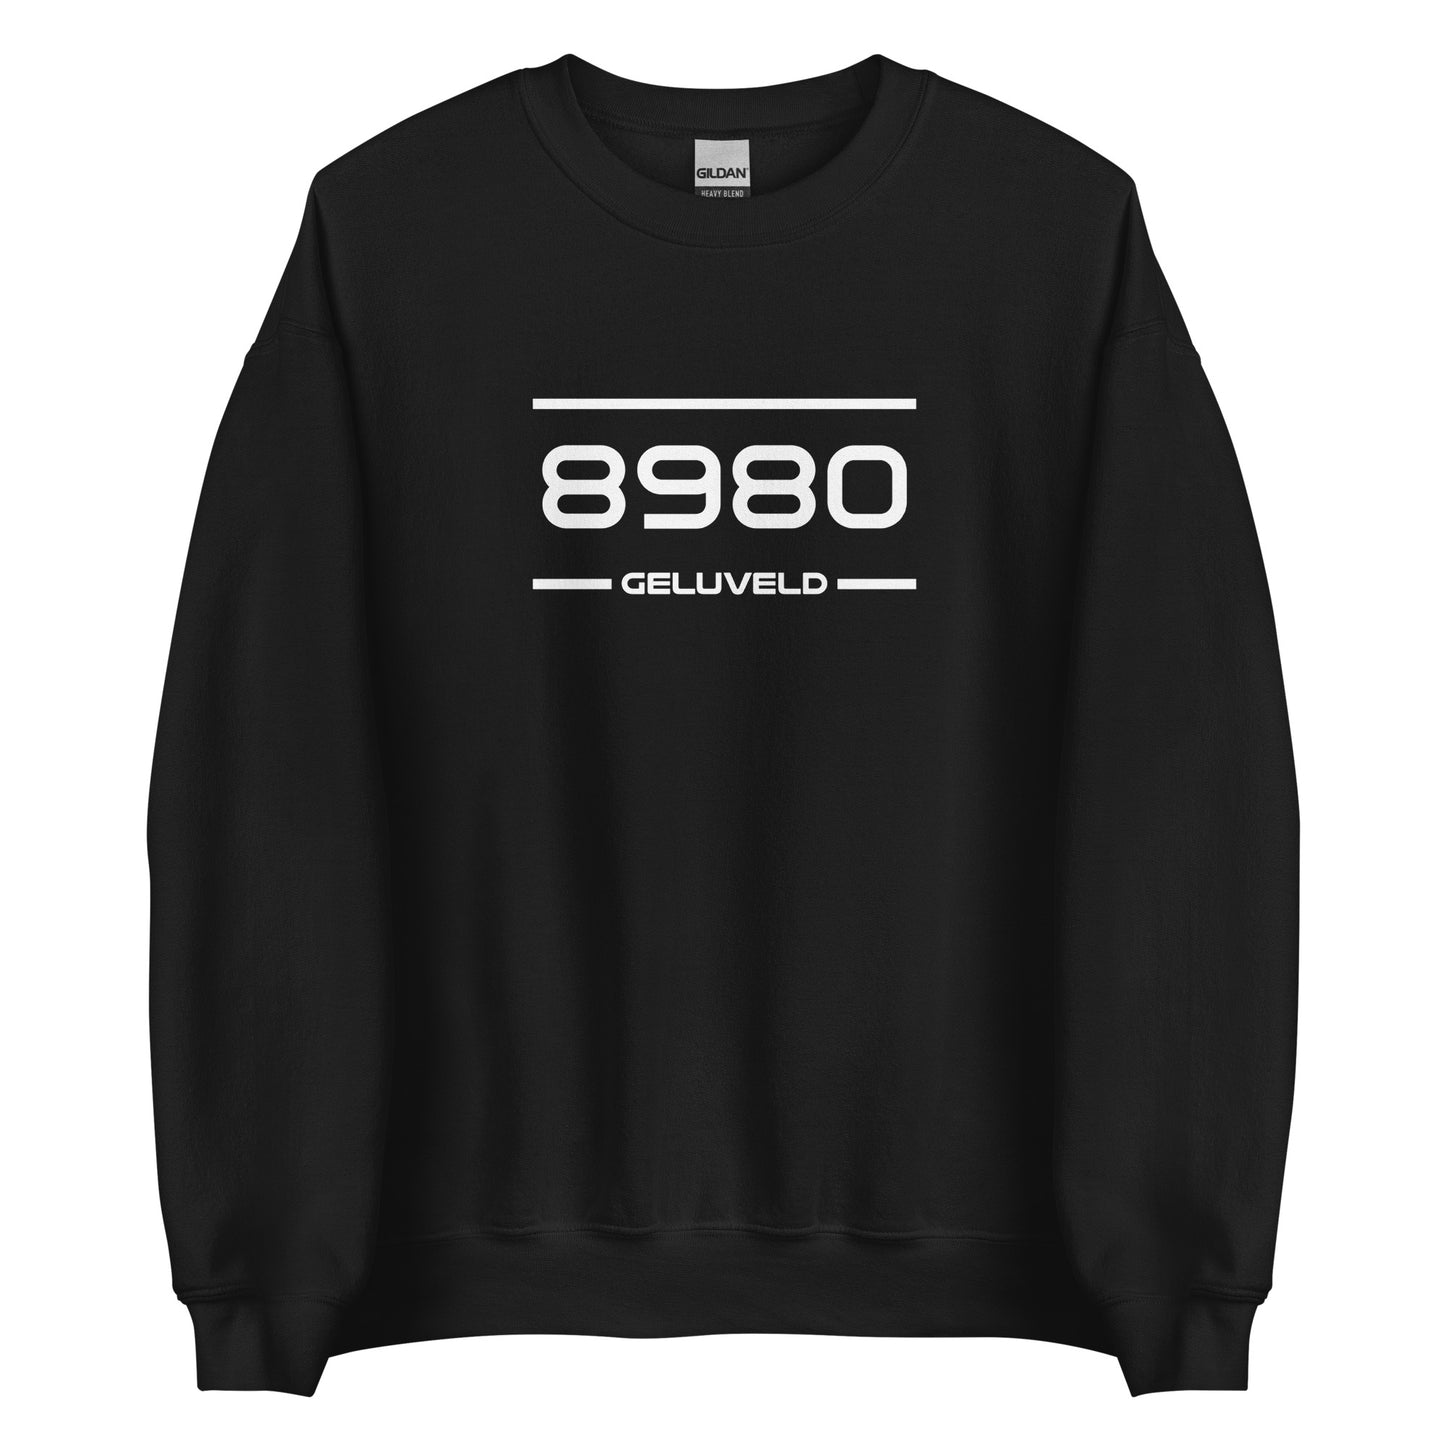 Sweater - 8980 - Geluveld (M/V)